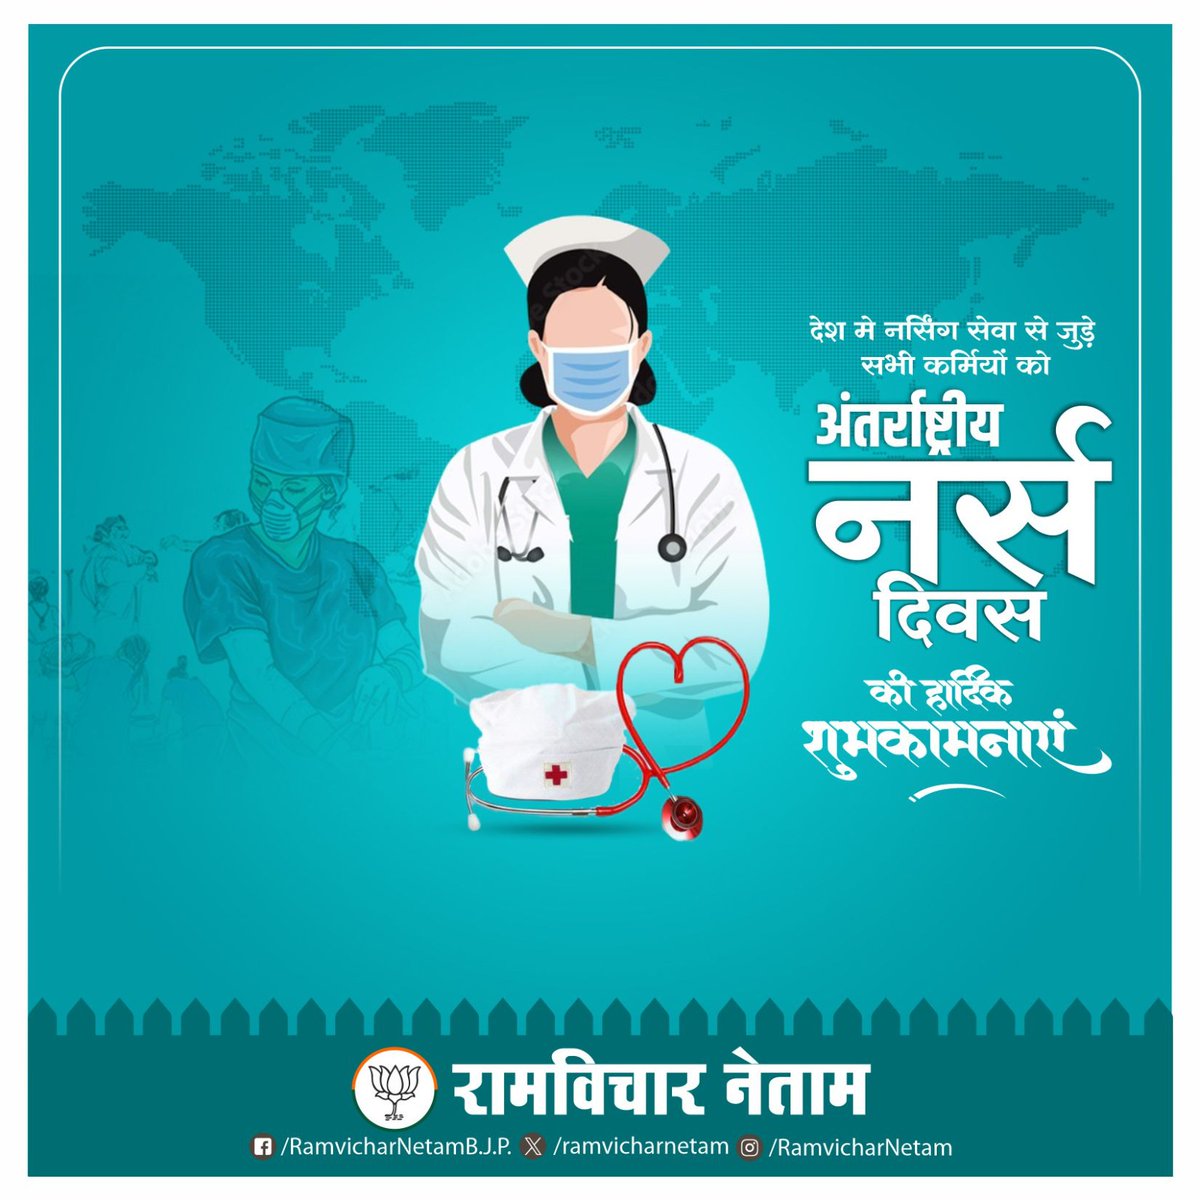 देश मे नर्सिंग सेवा से जुड़े सभी कर्मियों को अंतर्राष्ट्रीय नर्स दिवस की हार्दिक शुभकामनाएं ।